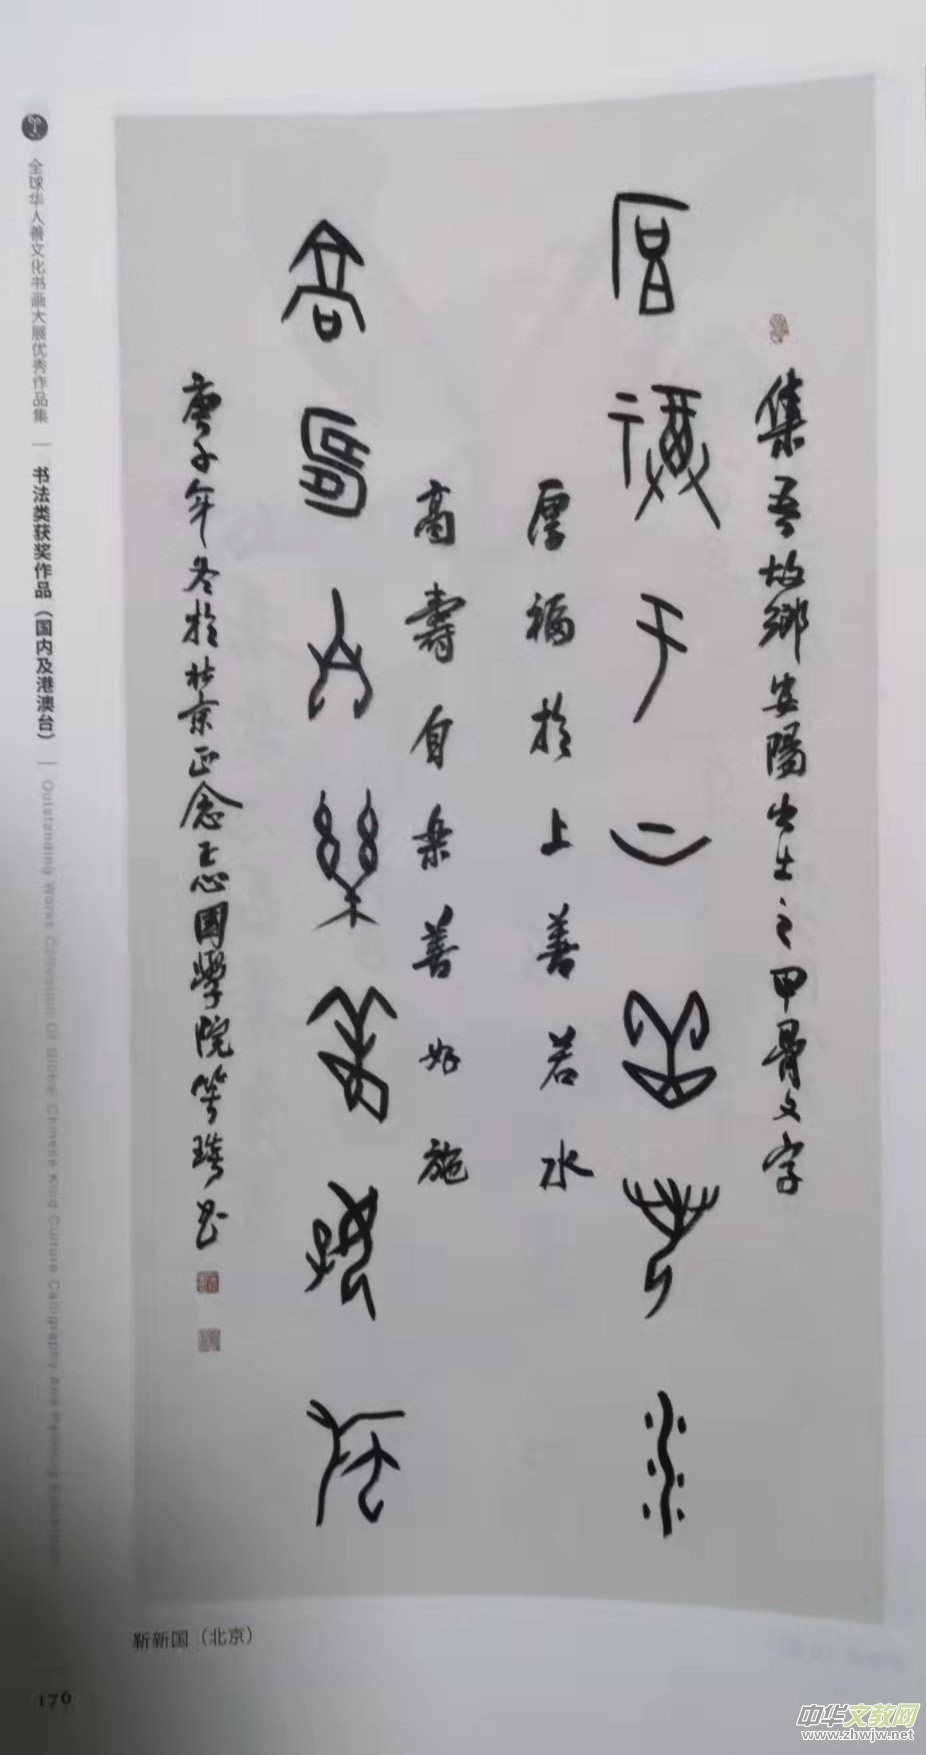 笑琰(靳新国）甲骨文作品入选《文化中国·世界华侨华人书画作品集》